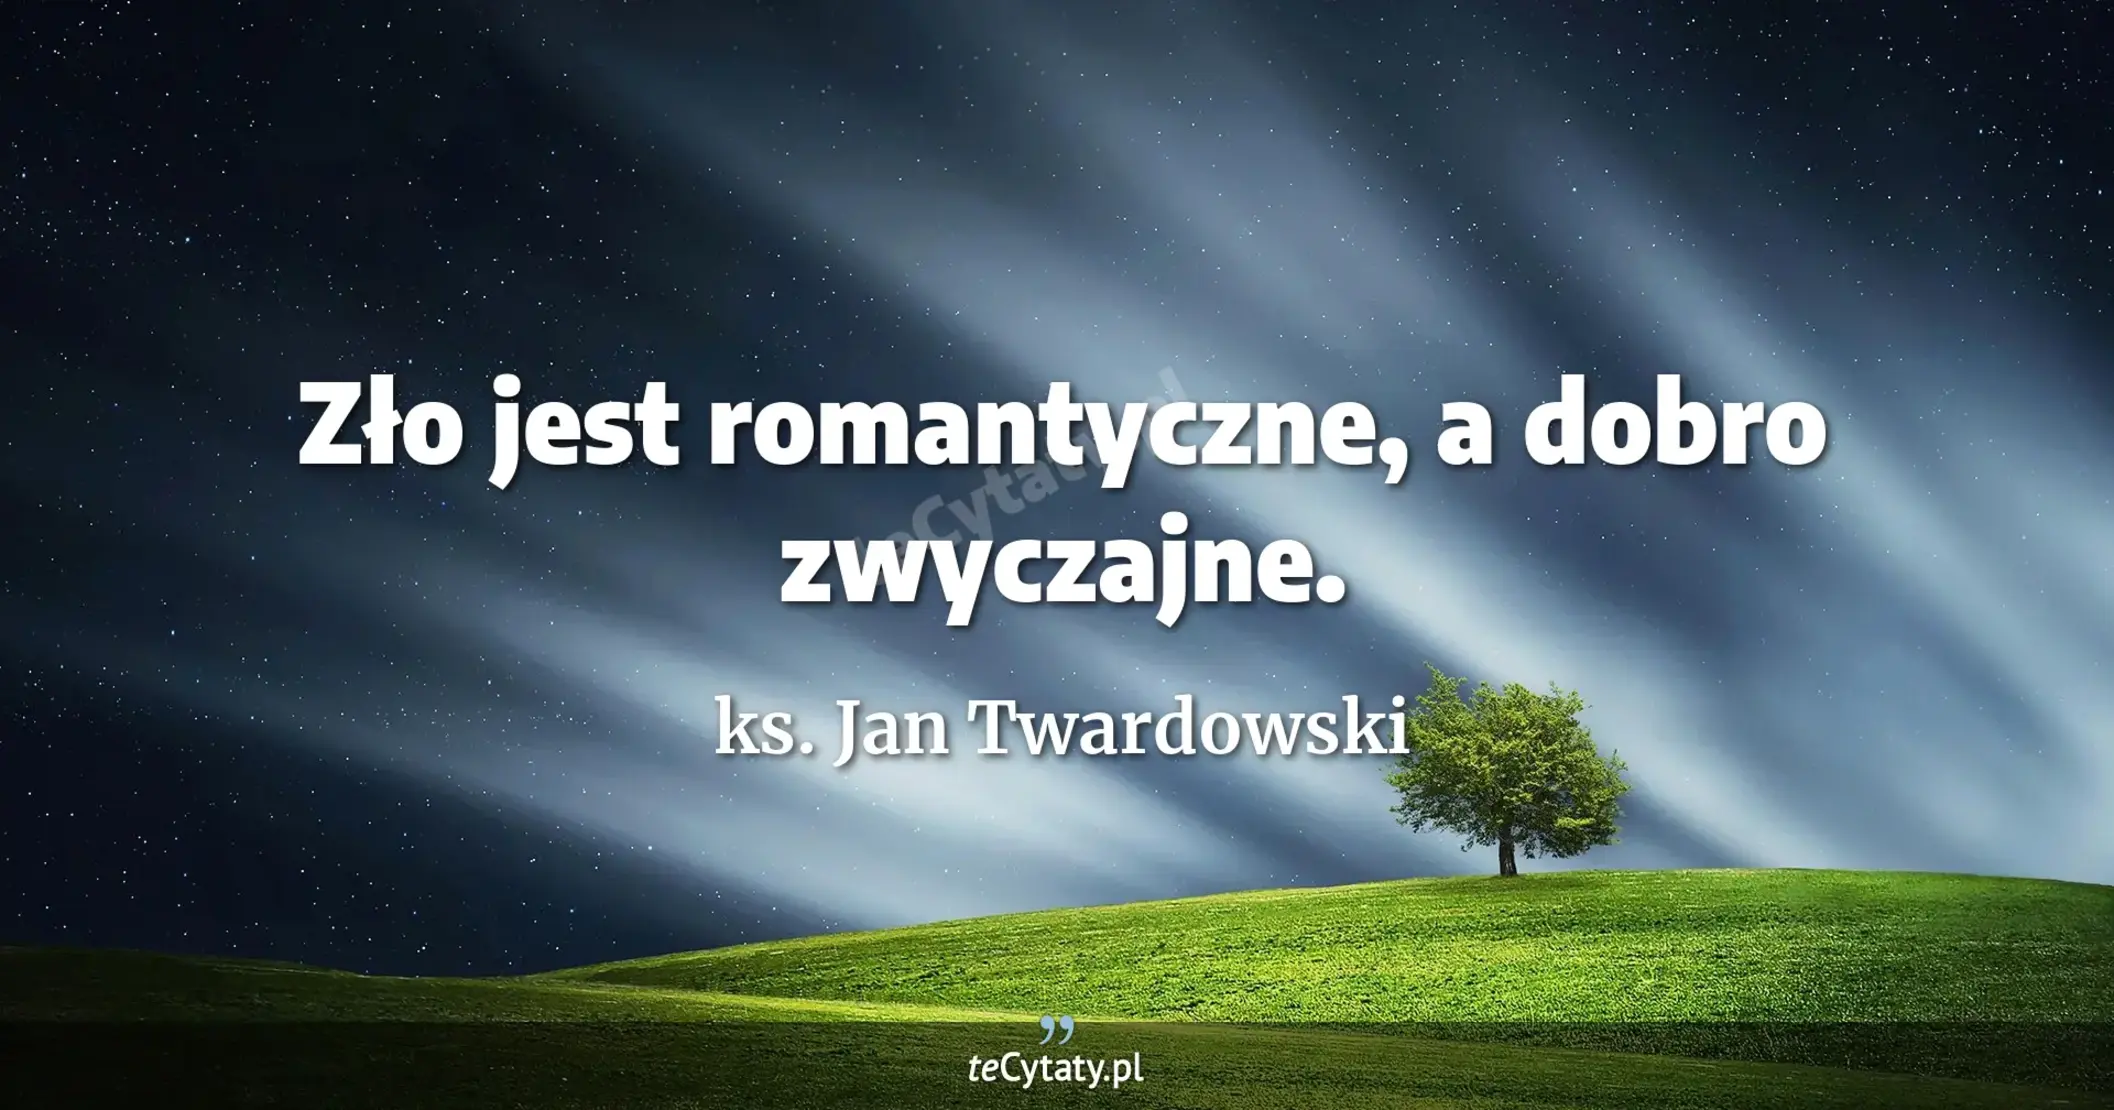 Zło jest romantyczne, a dobro zwyczajne. - ks. Jan Twardowski